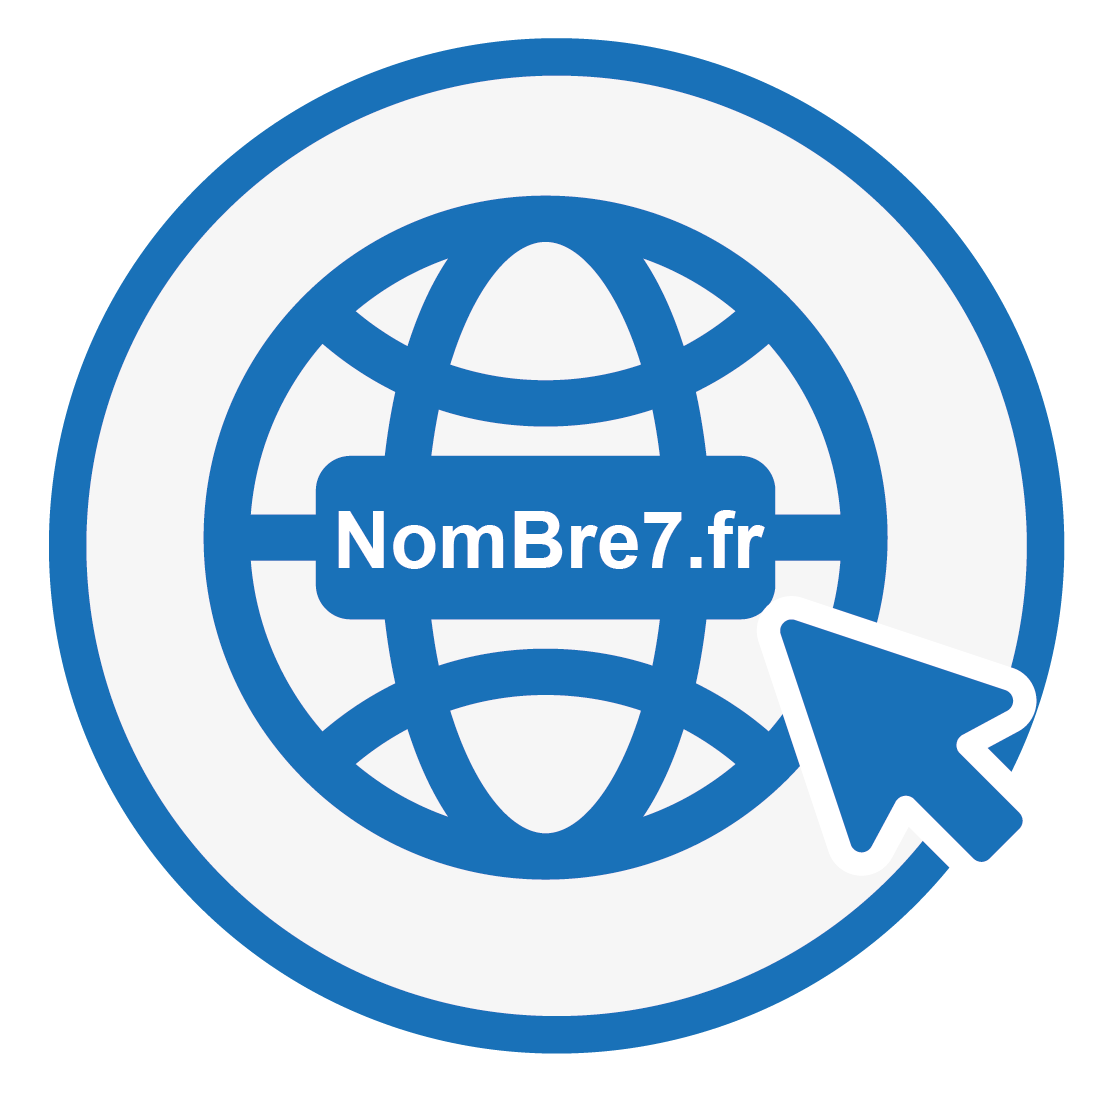 Le site NomBre7.fr